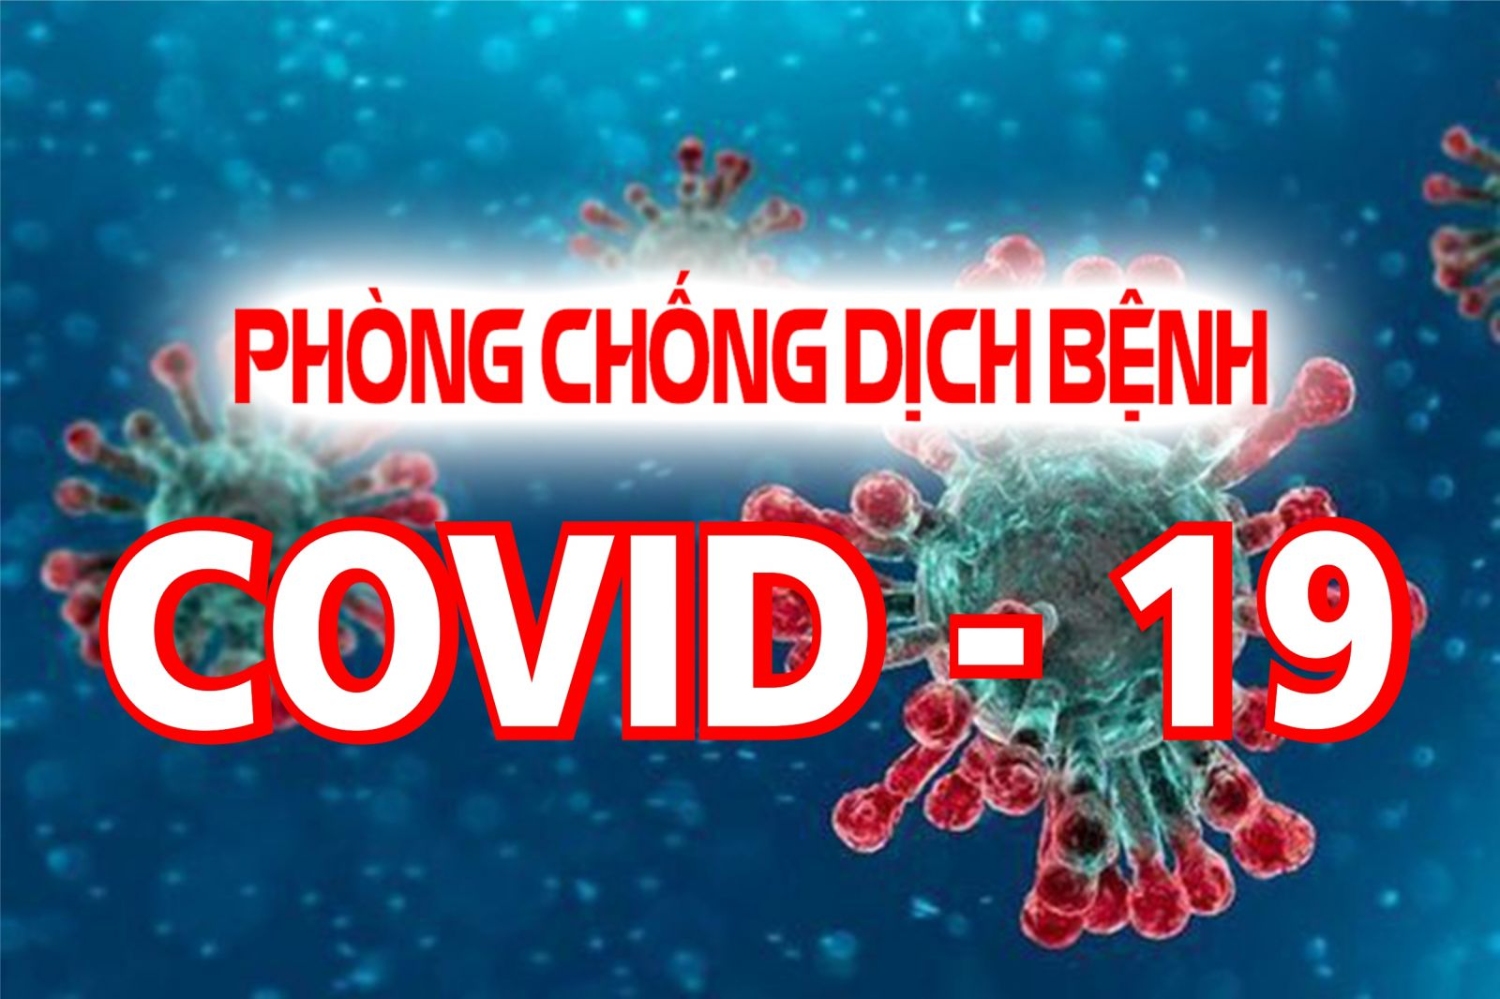 Công văn hỏa tốc của UBND tỉnh Quảng Bình về việc tiếp tục triển khai các biện pháp phòng chống COVID-19 trên địa bàn.